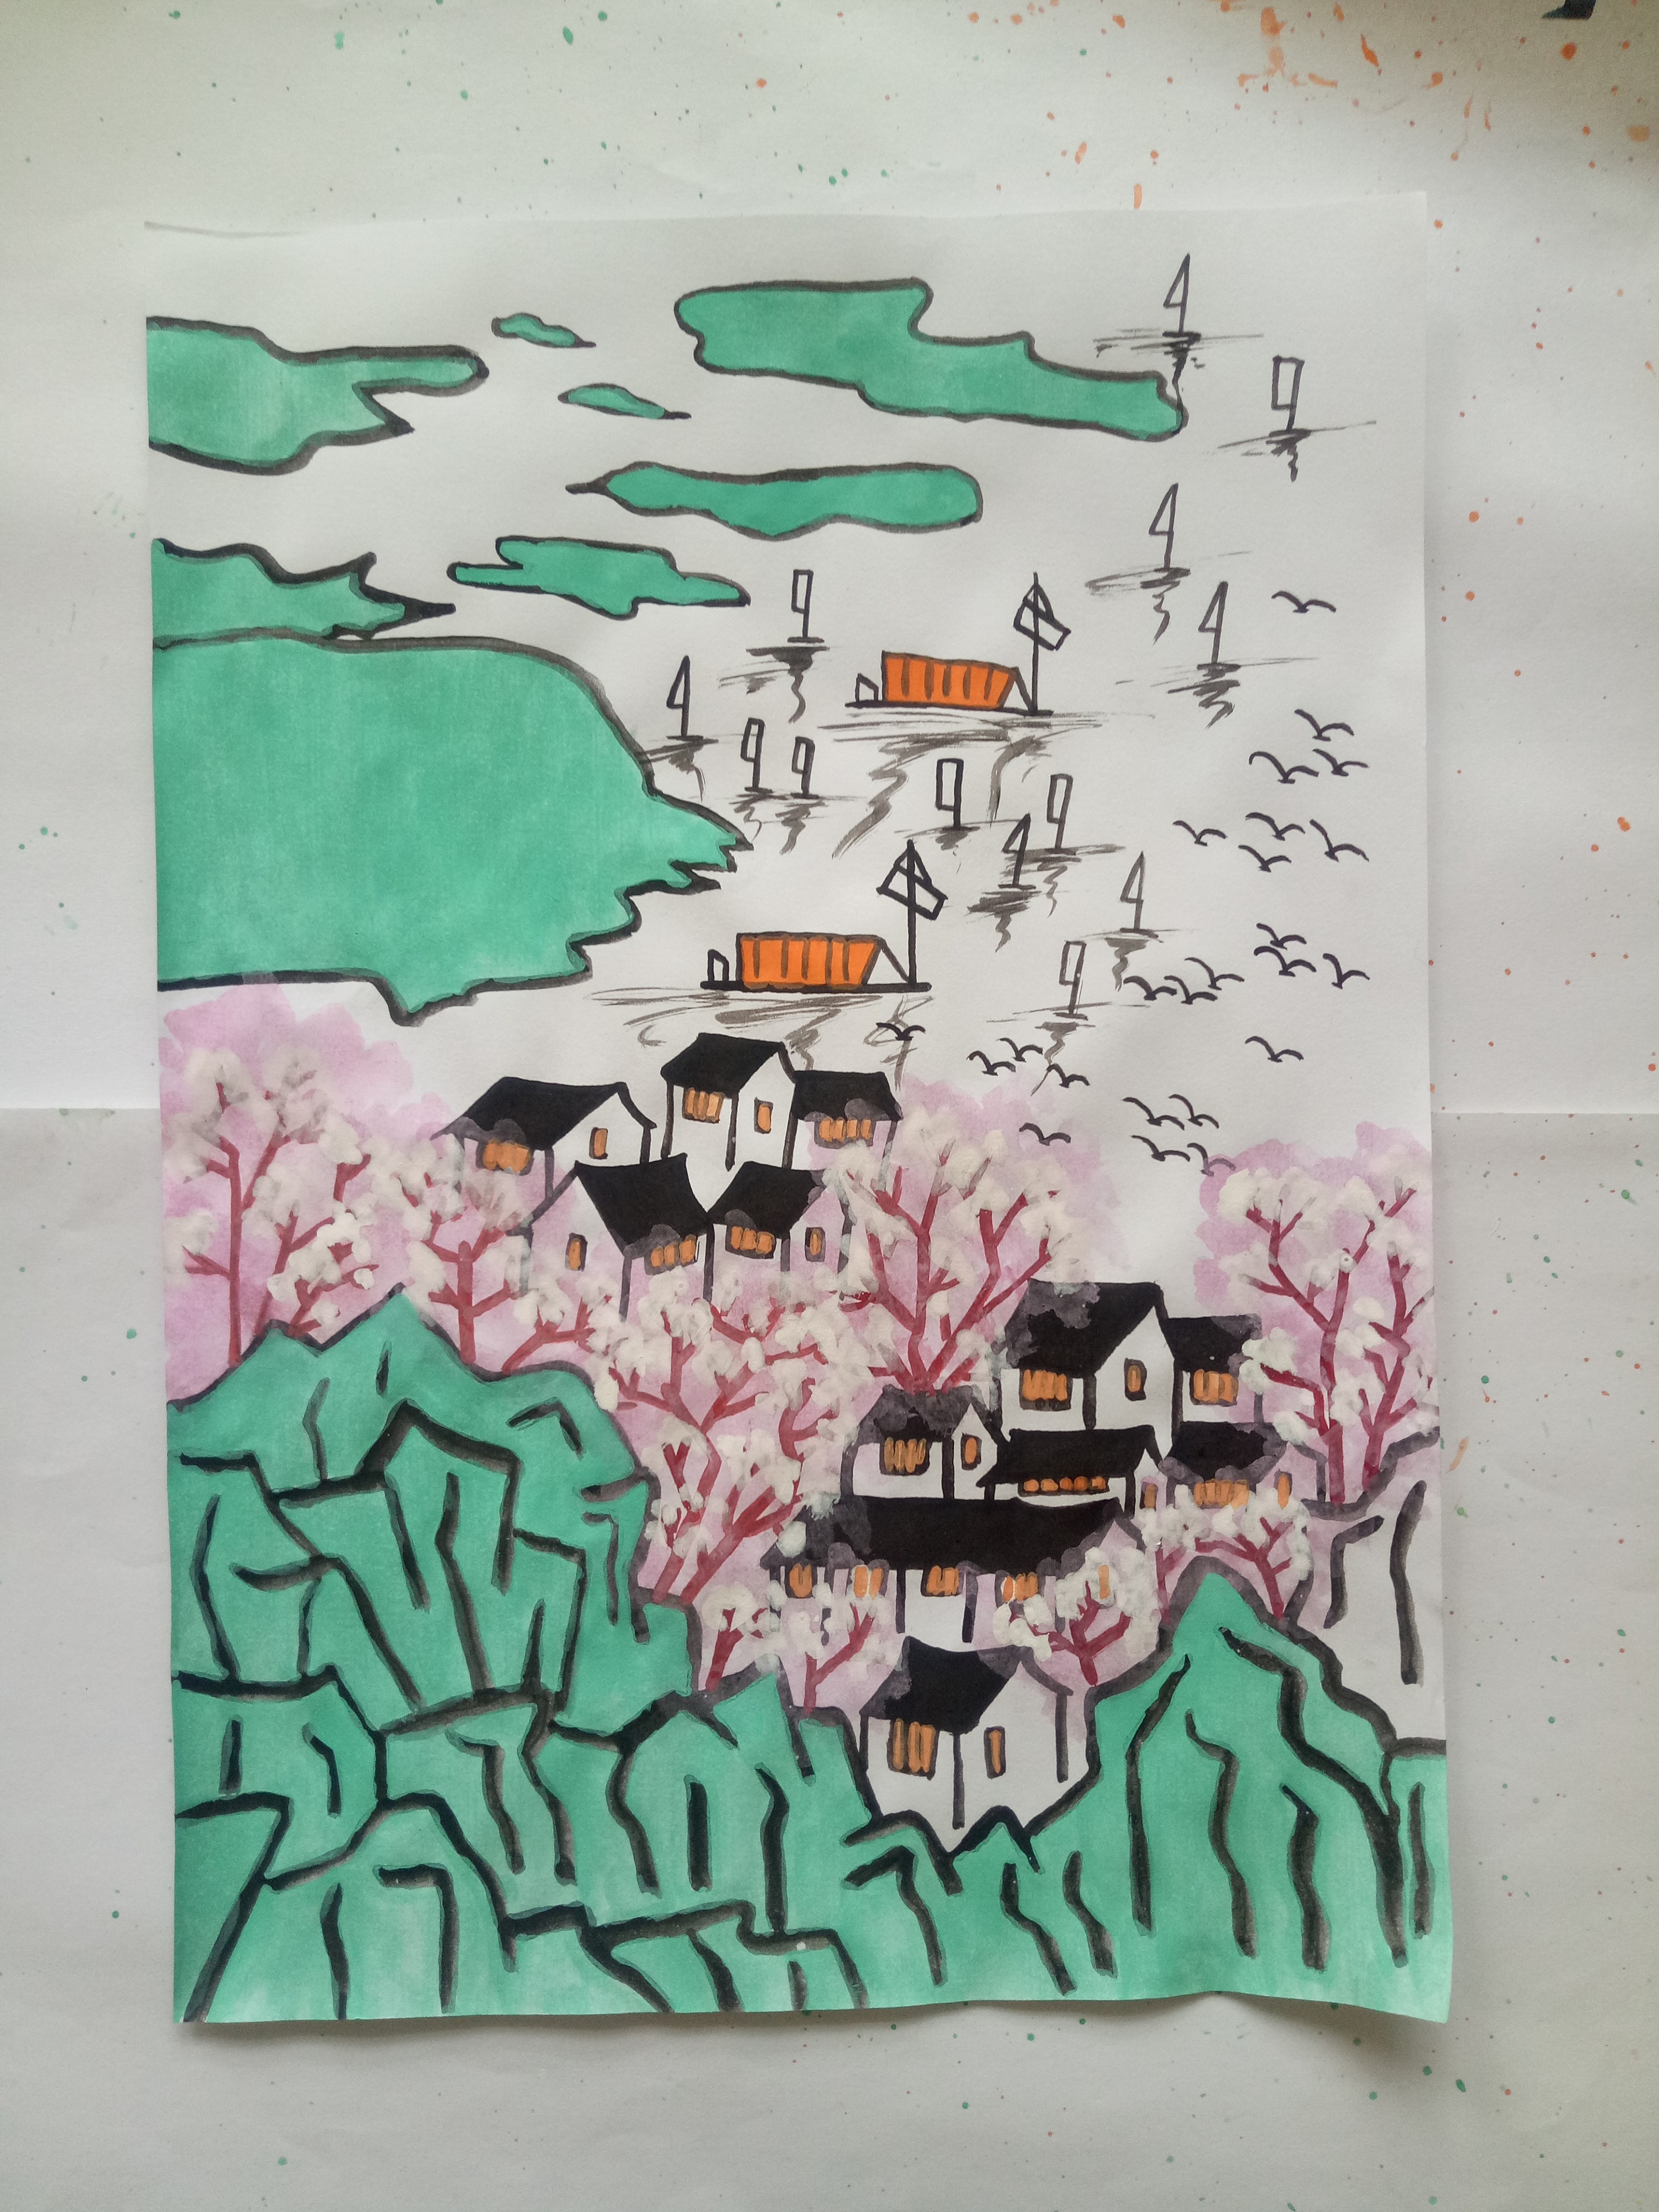 窑湾古镇绘画图片